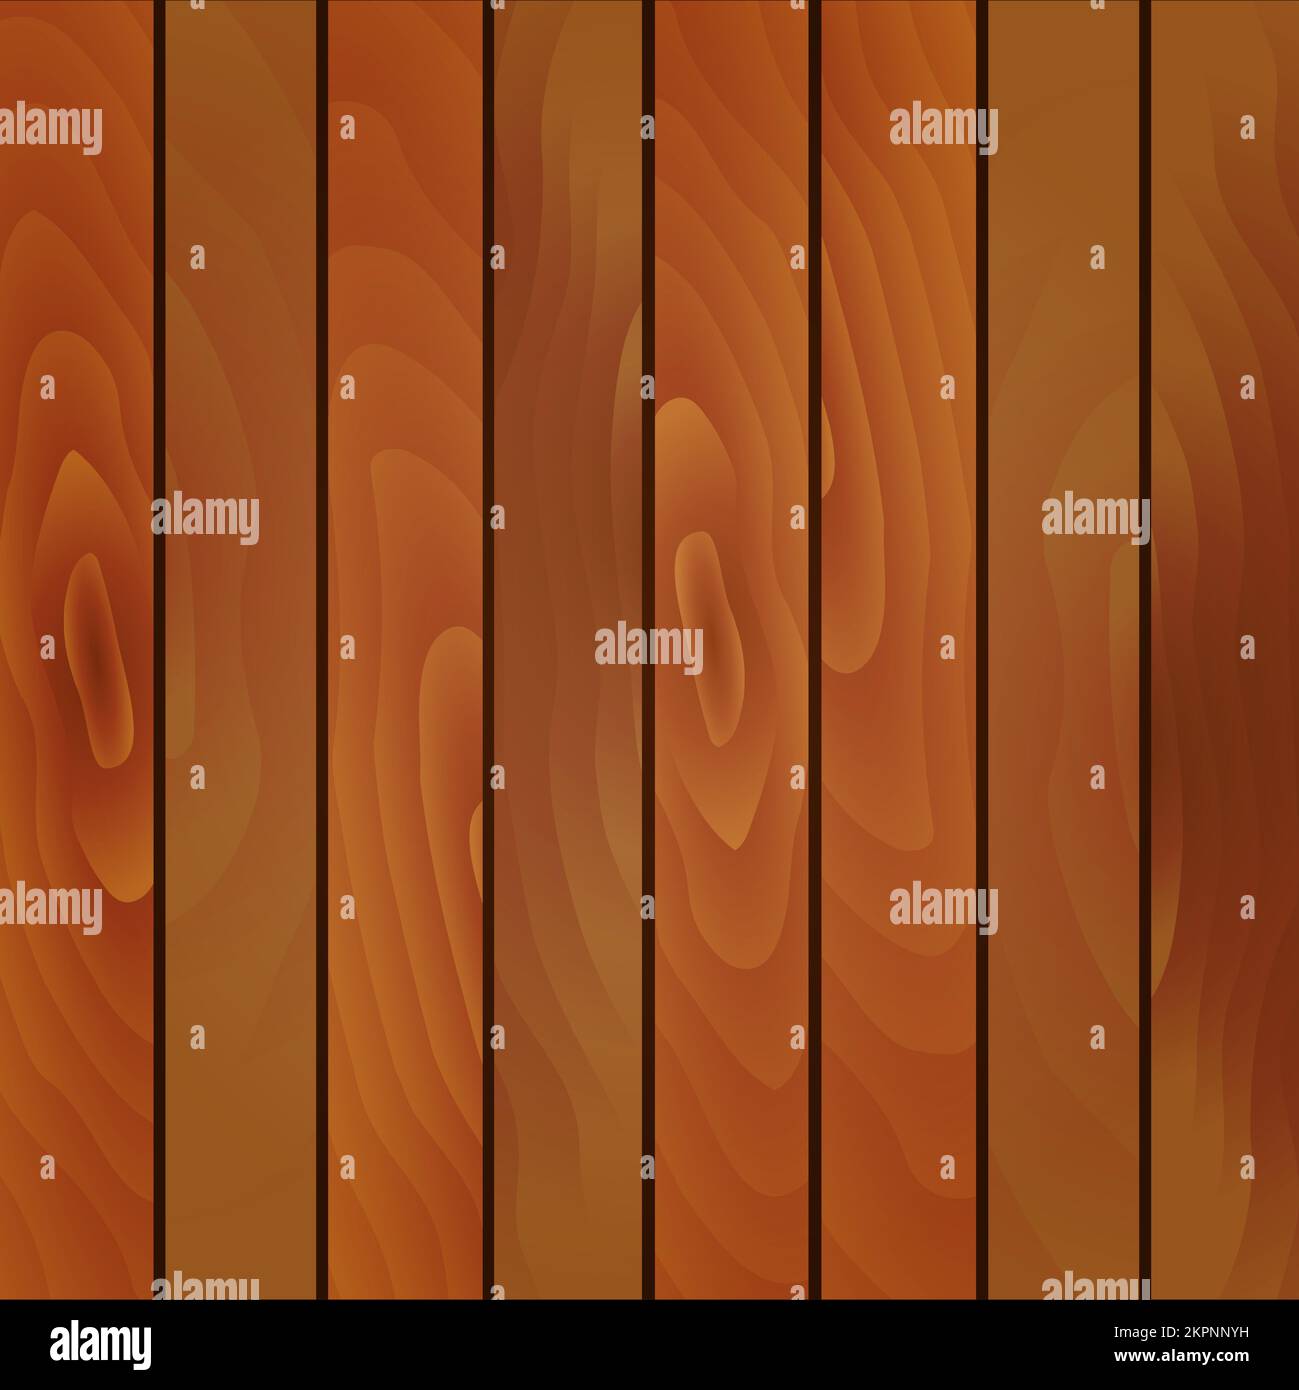 Ilustración vectorial de fondo de textura de madera. Ilustración del Vector